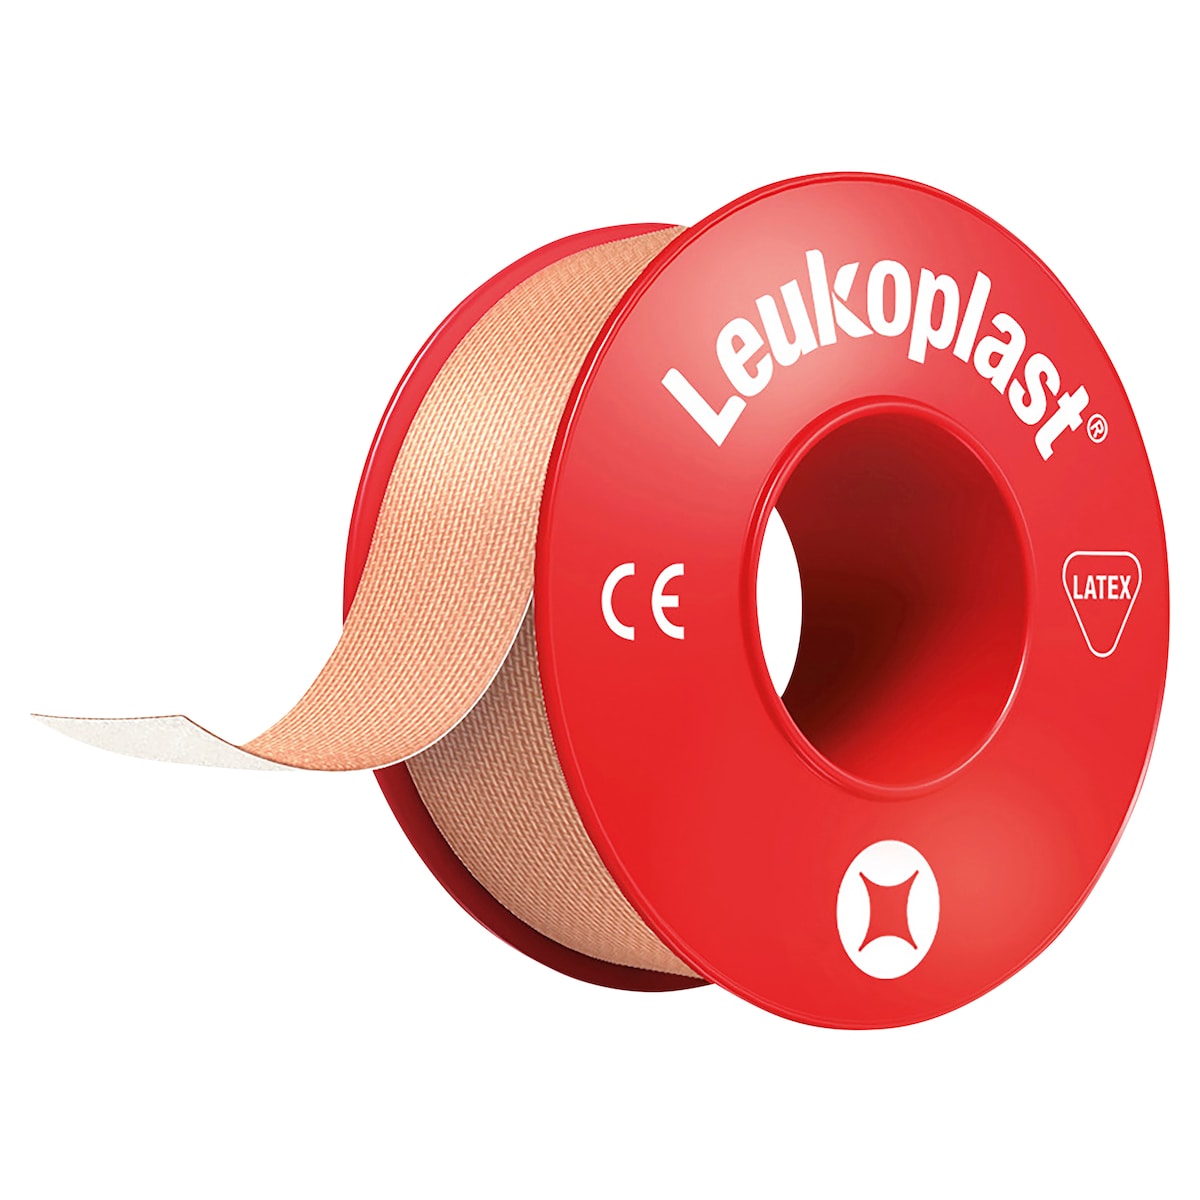 Leukoplast Standard Rigid Tape Tan 2.5cm x 5m 1 Roll